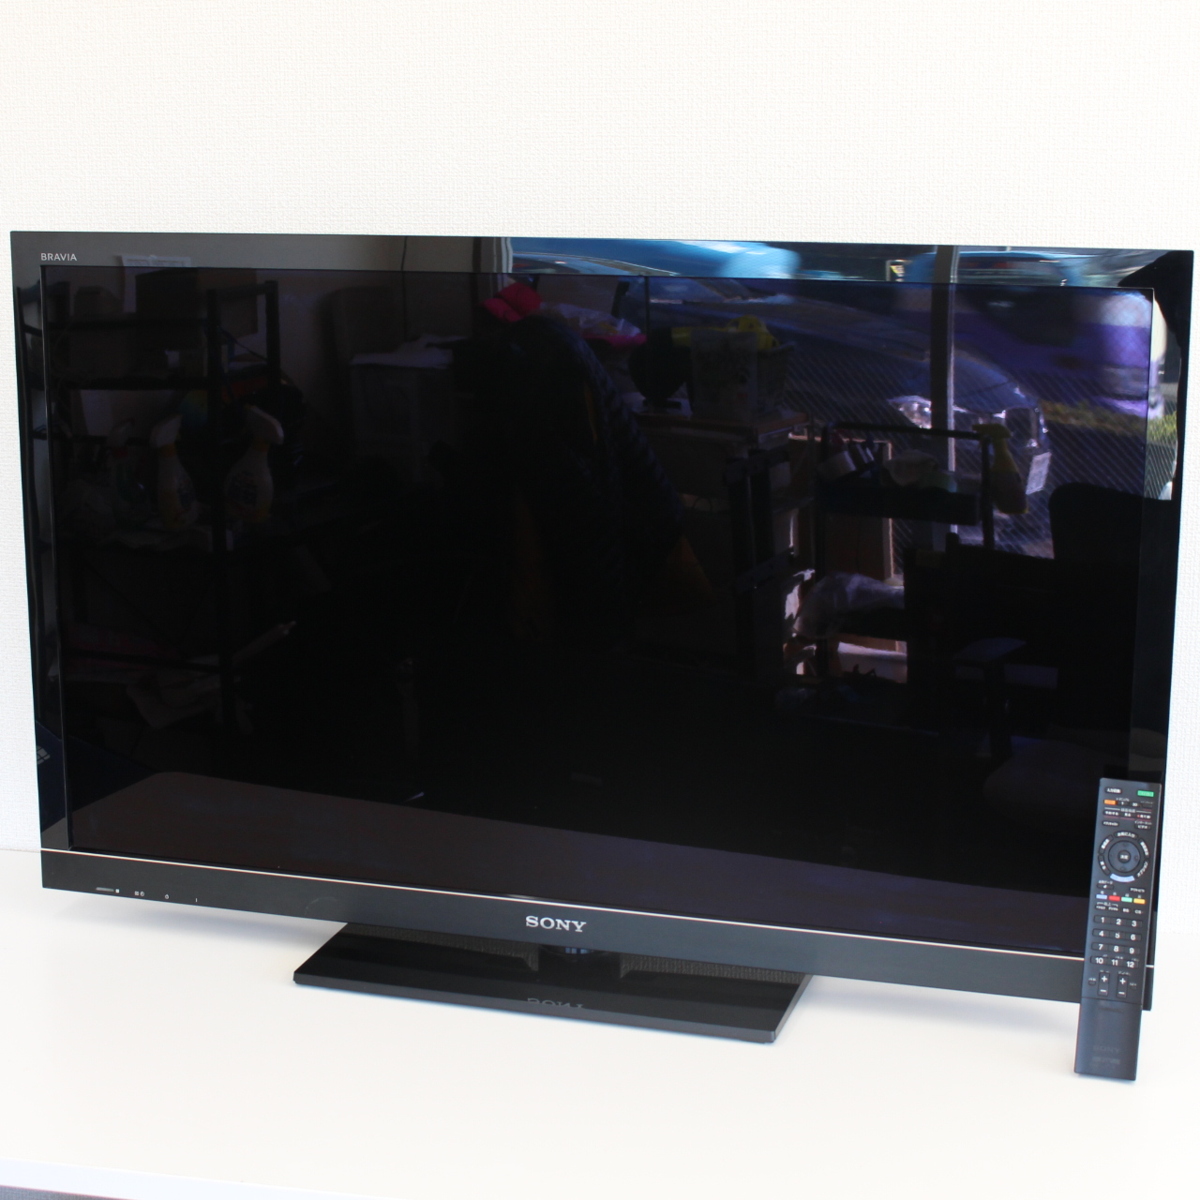 ソニー SONY デジタルハイビジョン液晶テレビ KDL-46HX800 46型 2010年製